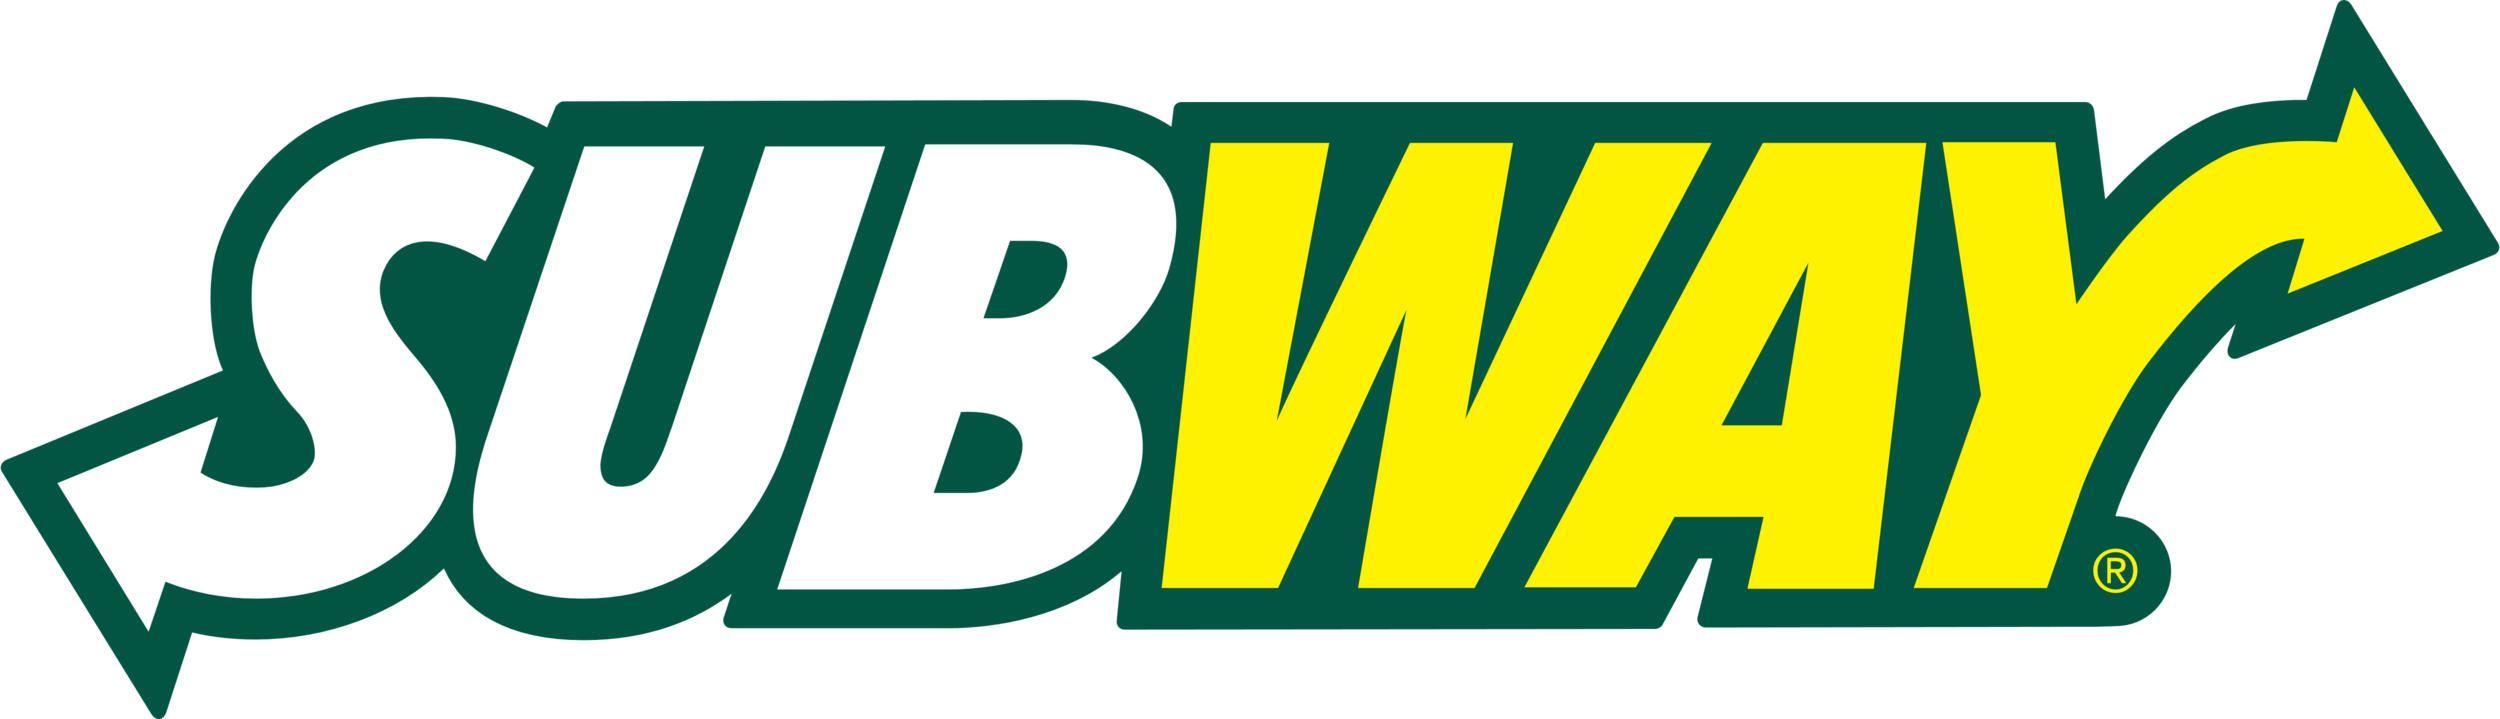 subway logo.png